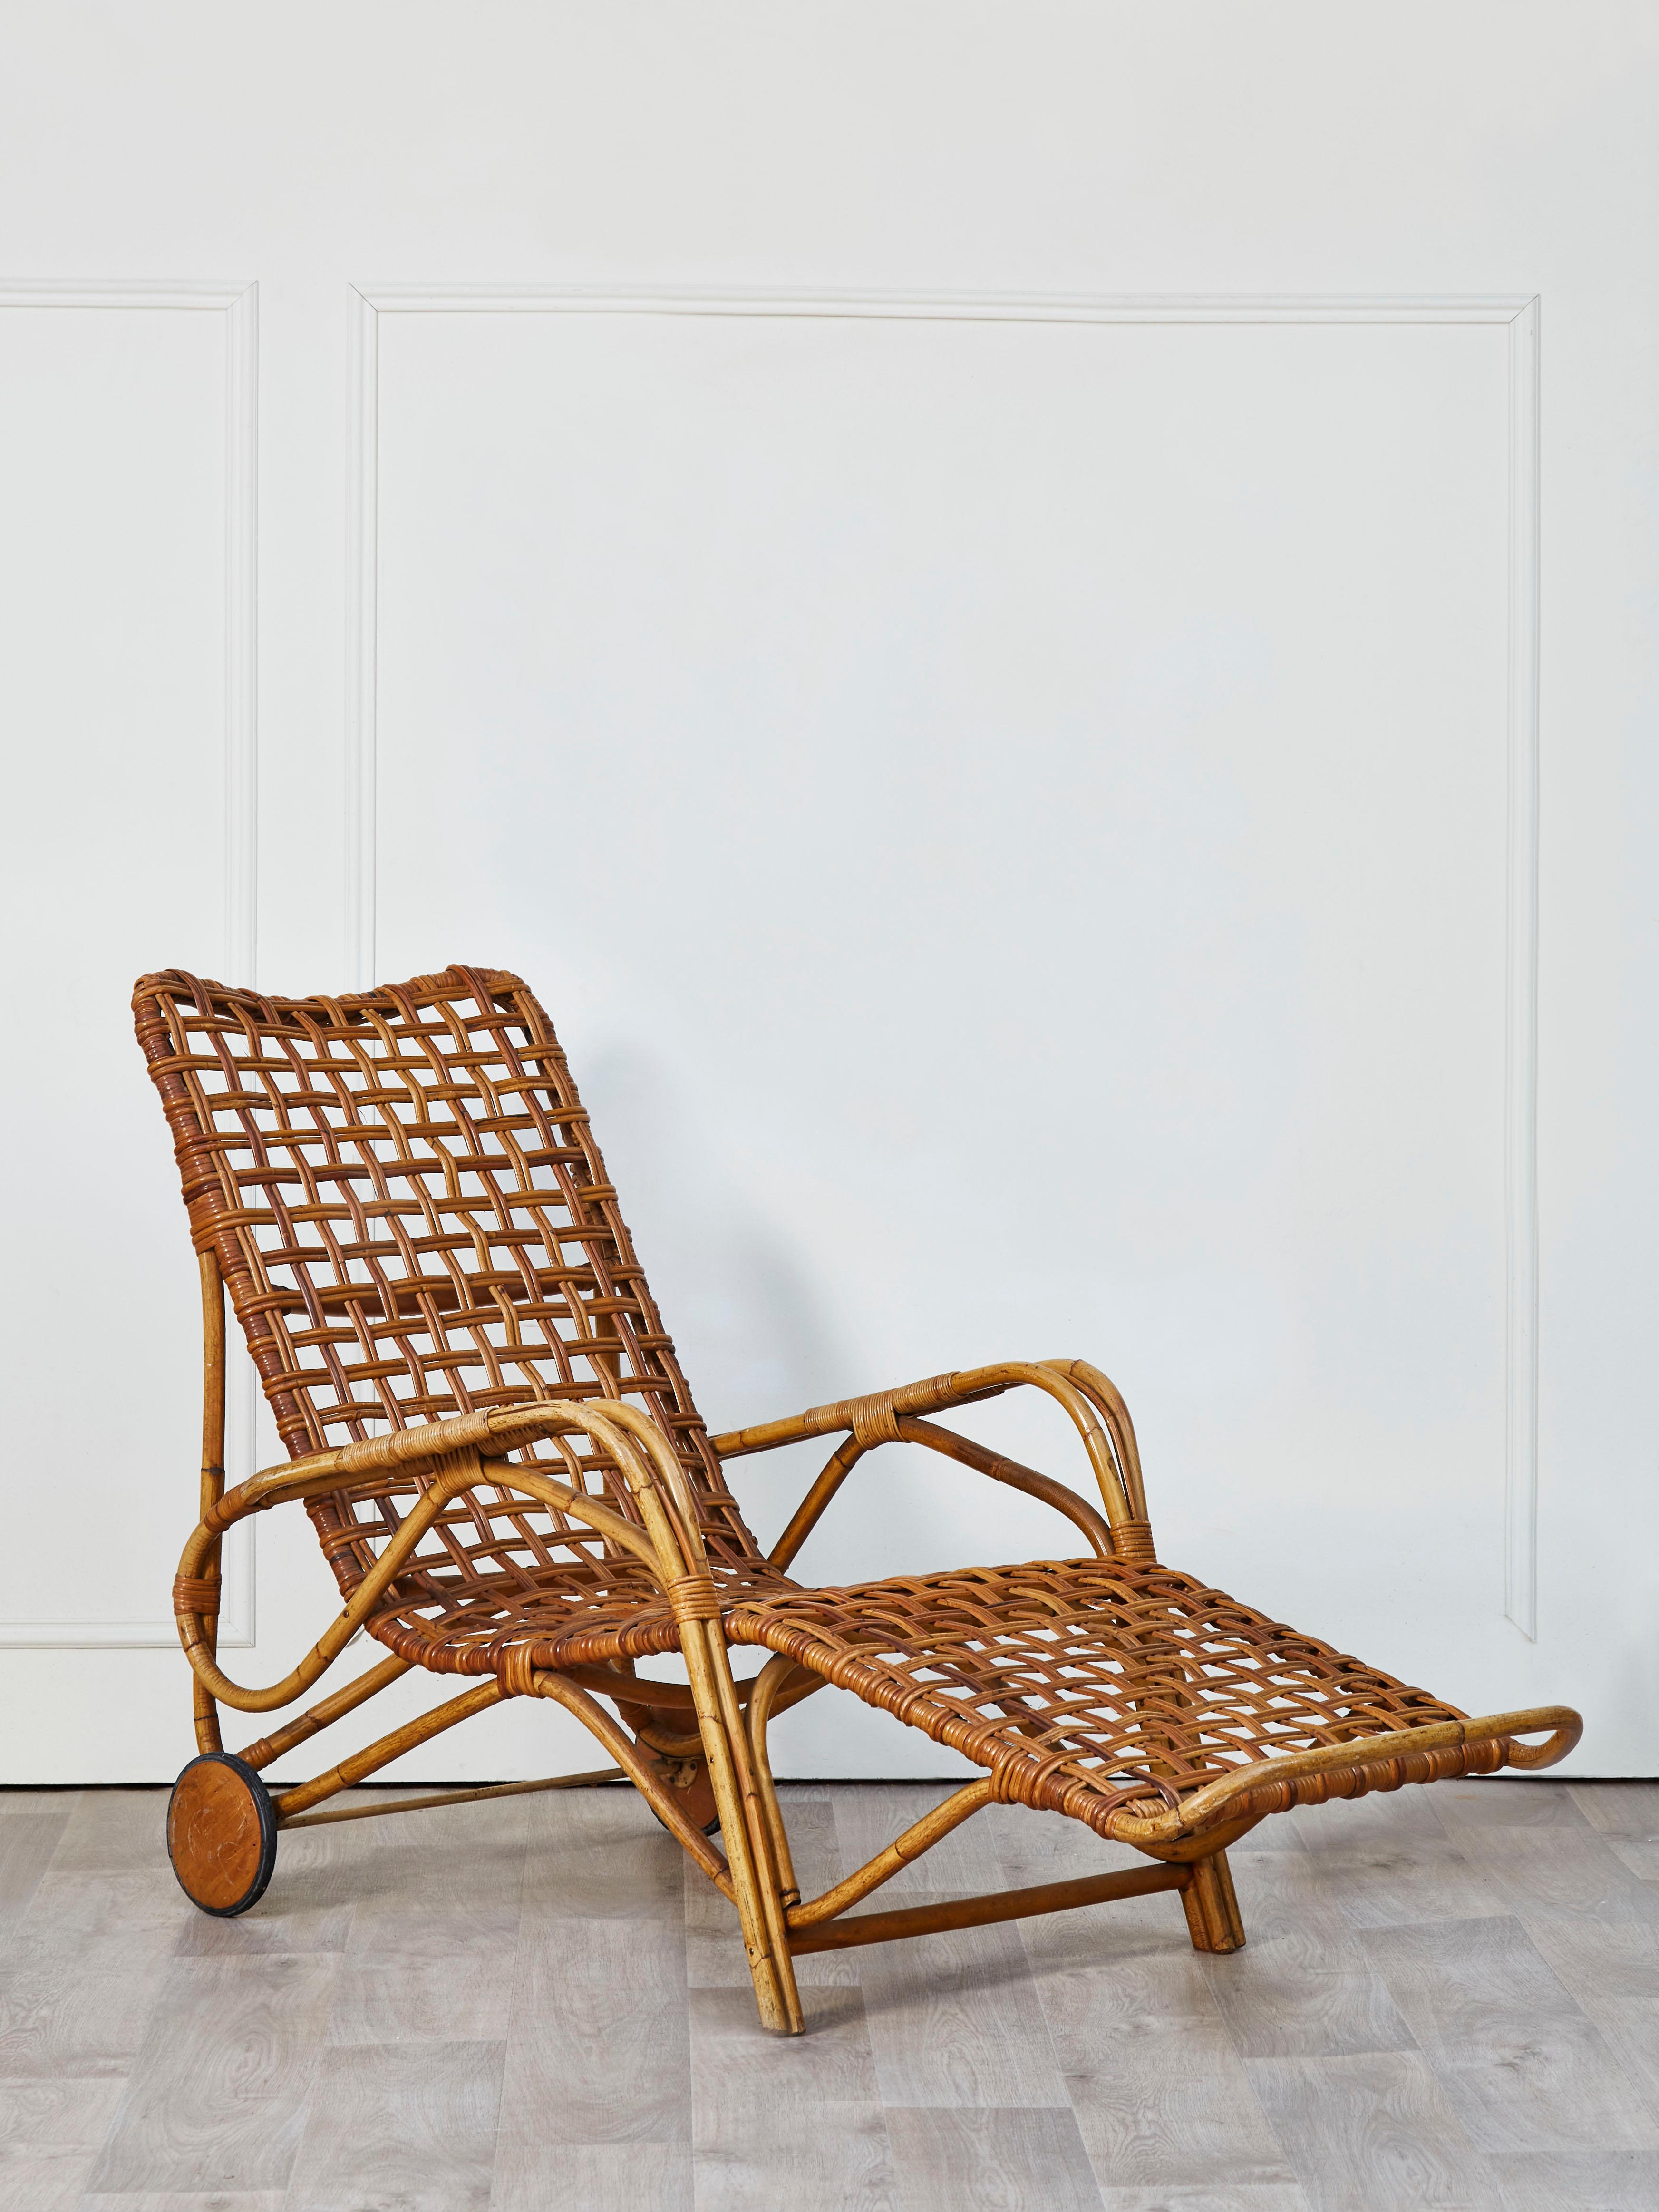 rattan beach chair